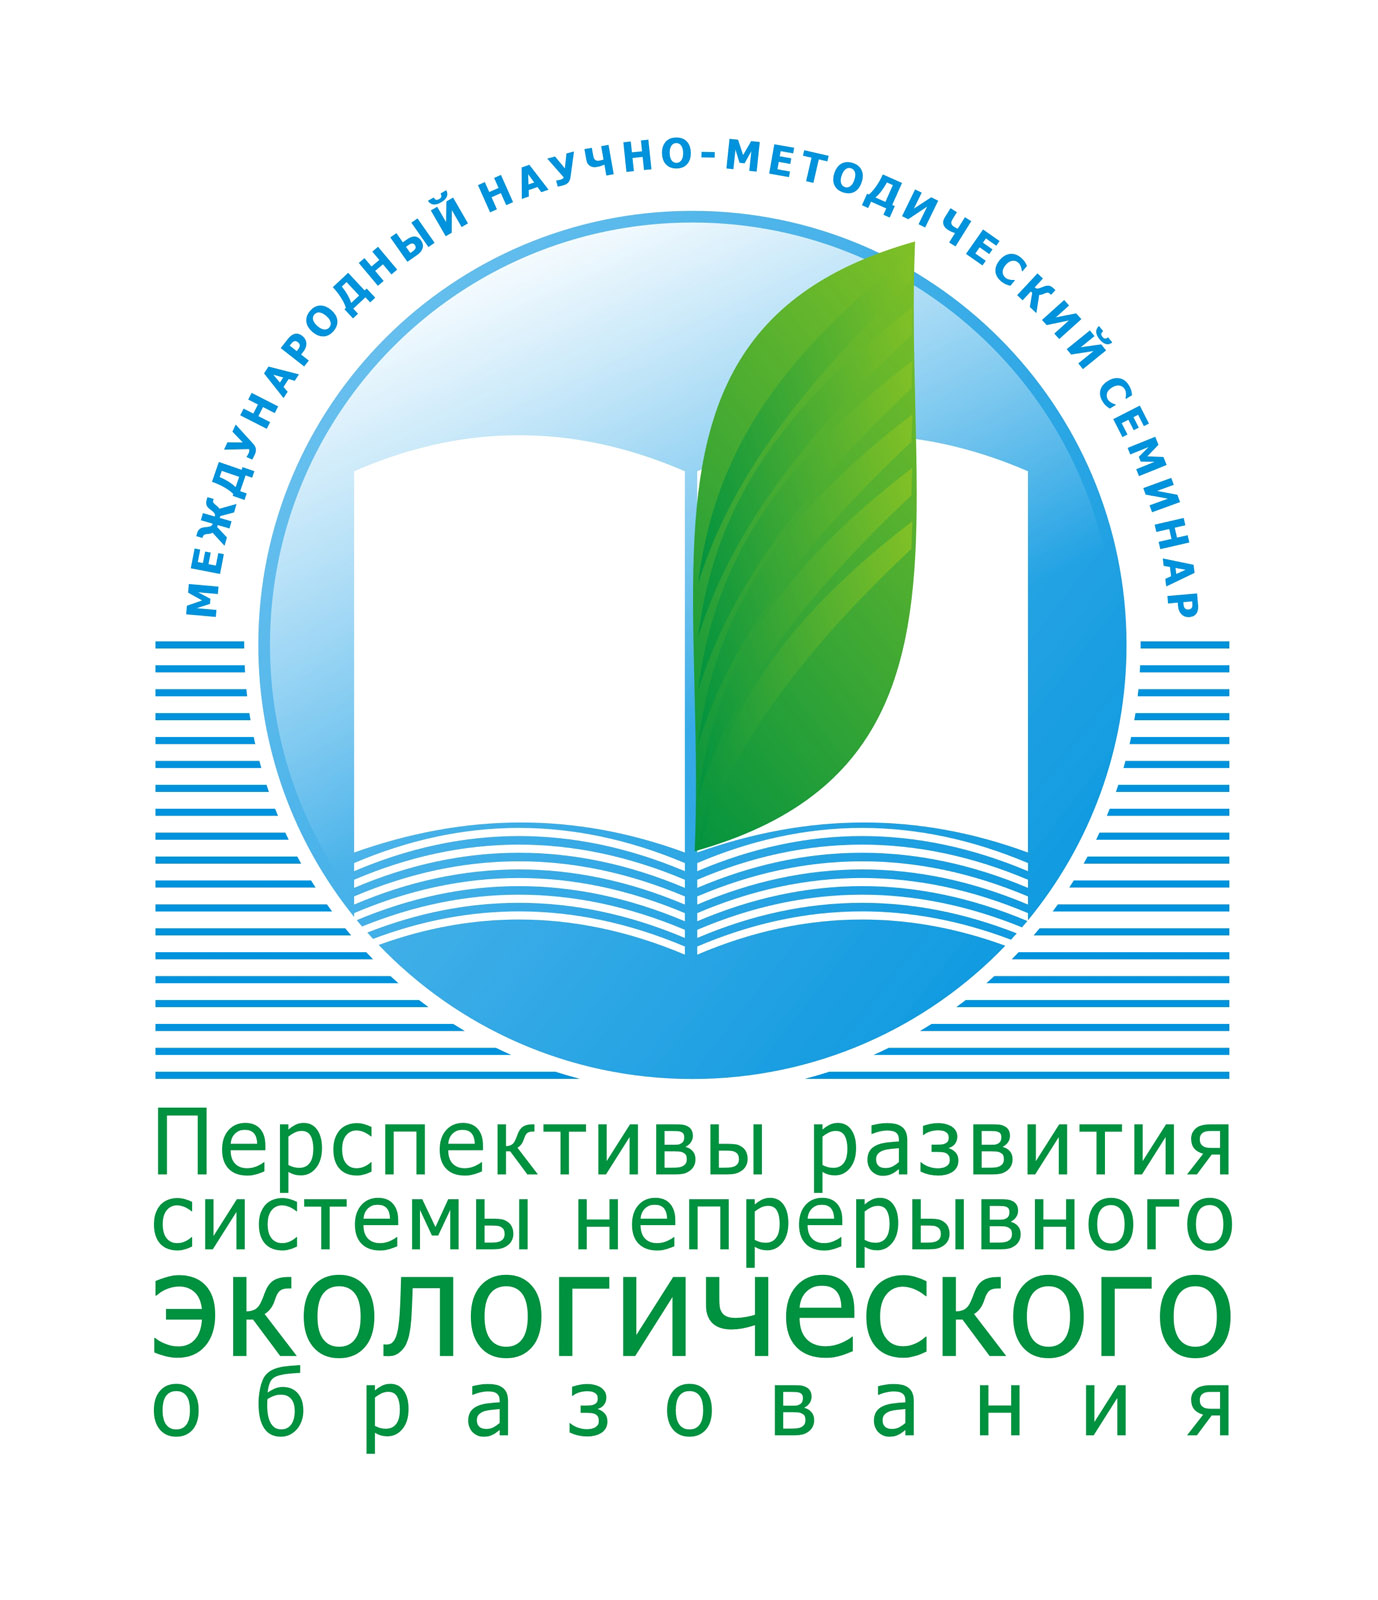 Международный научно-методический семинар в Санкт-Петербурге – знаковое событие Года охраны окружающей среды в России